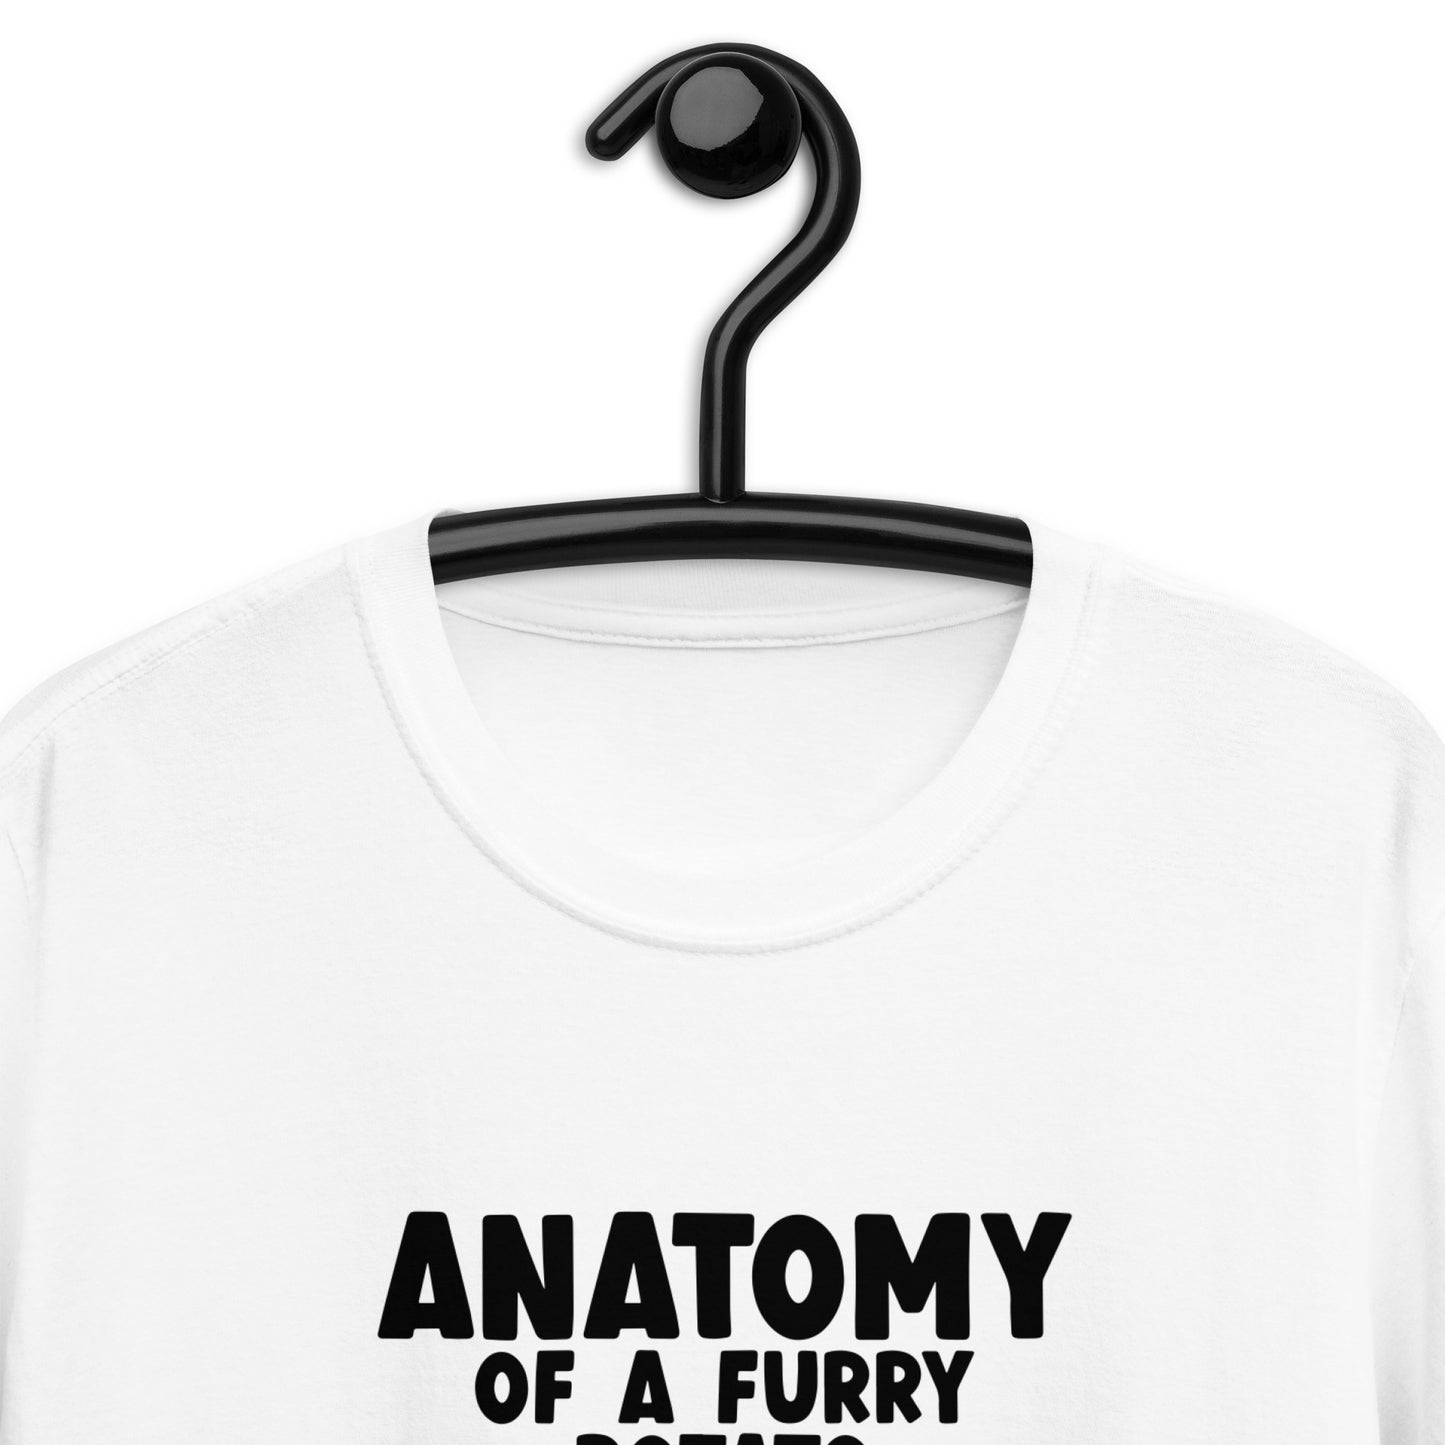 Guinea Pig Anatomy Of A Furry Potato Shirt | Guinea Pig Gifts | Guinea Pig Unisex T-Shirt